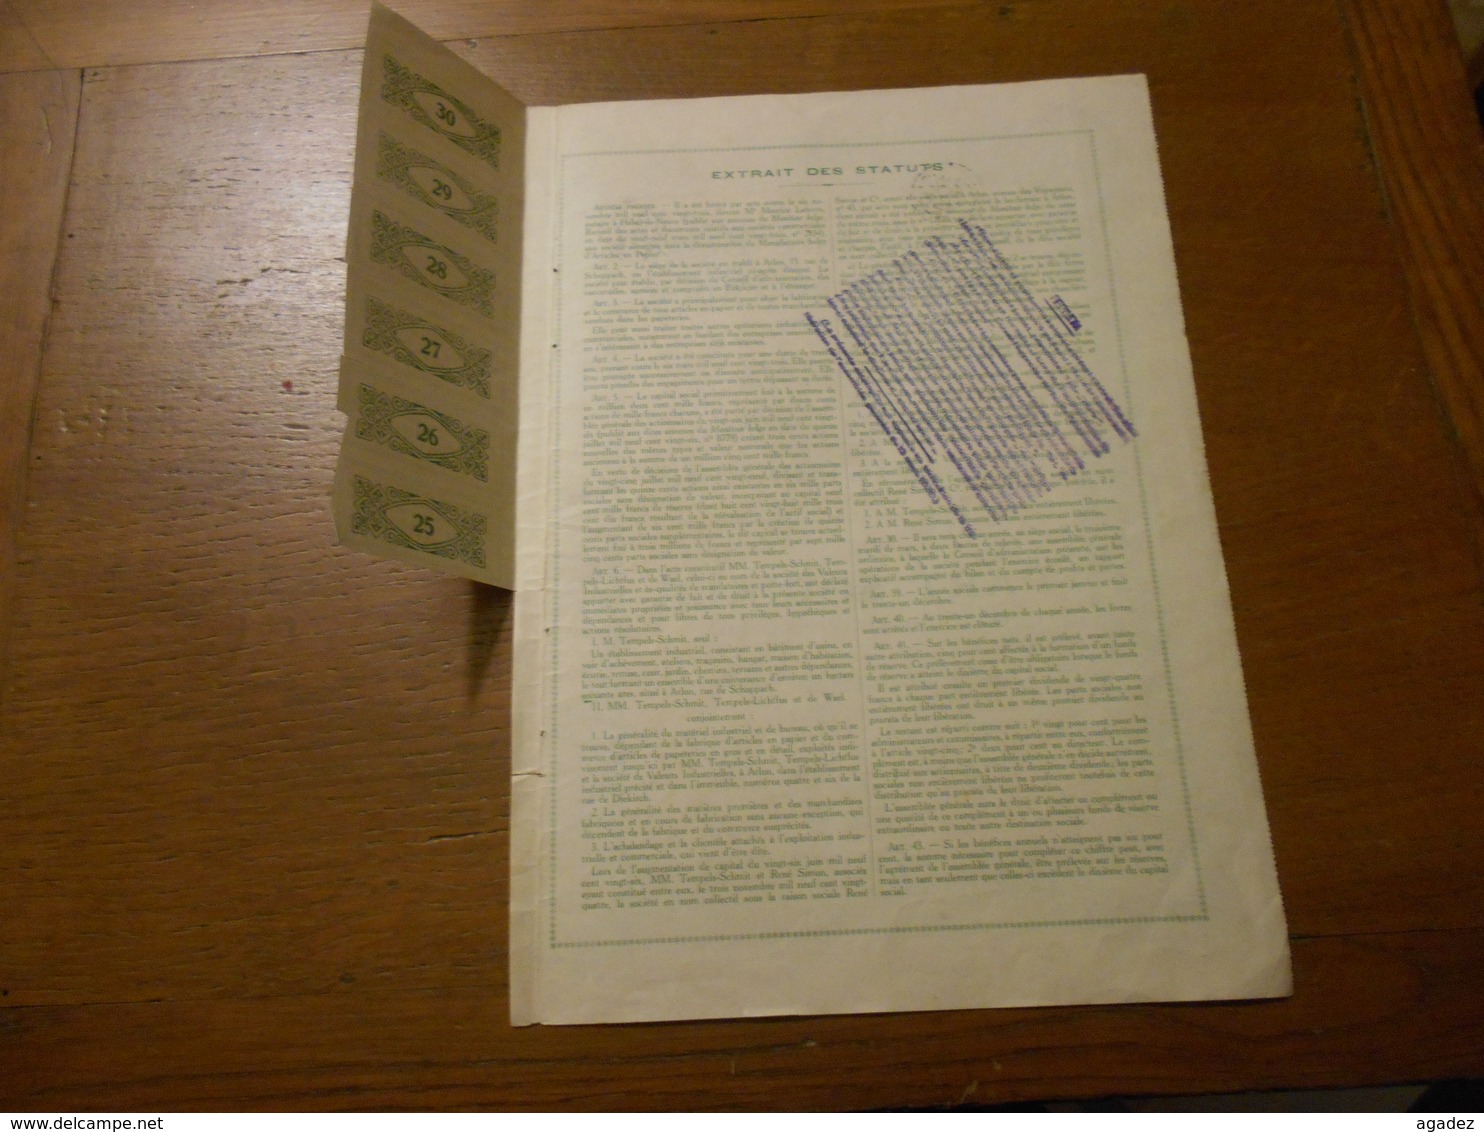 Part Sociale " Manufacture Belge D'articles En Papier "Arlon 1929 (Belgian Paper Industry).N° 003707. - Industrie